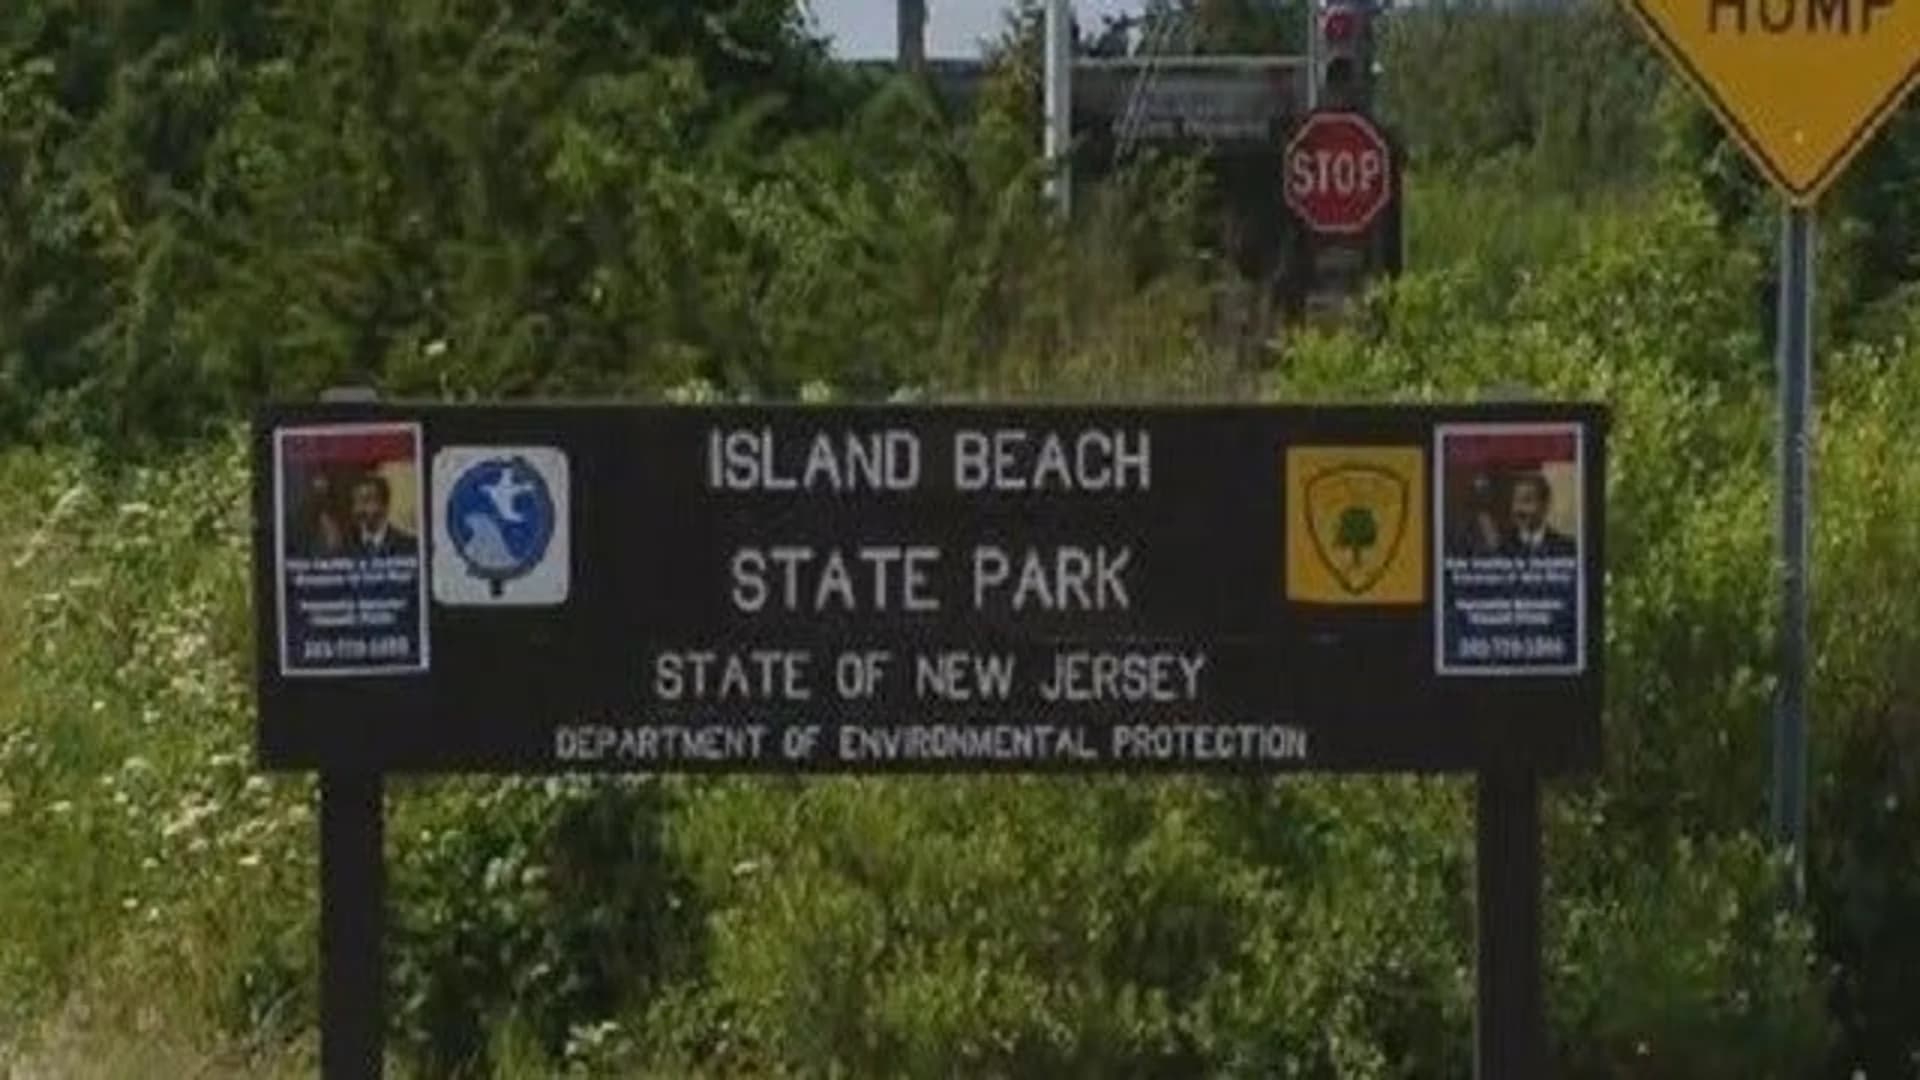 Christie's gov’t shutdown beach trip inspires 2 new proposals